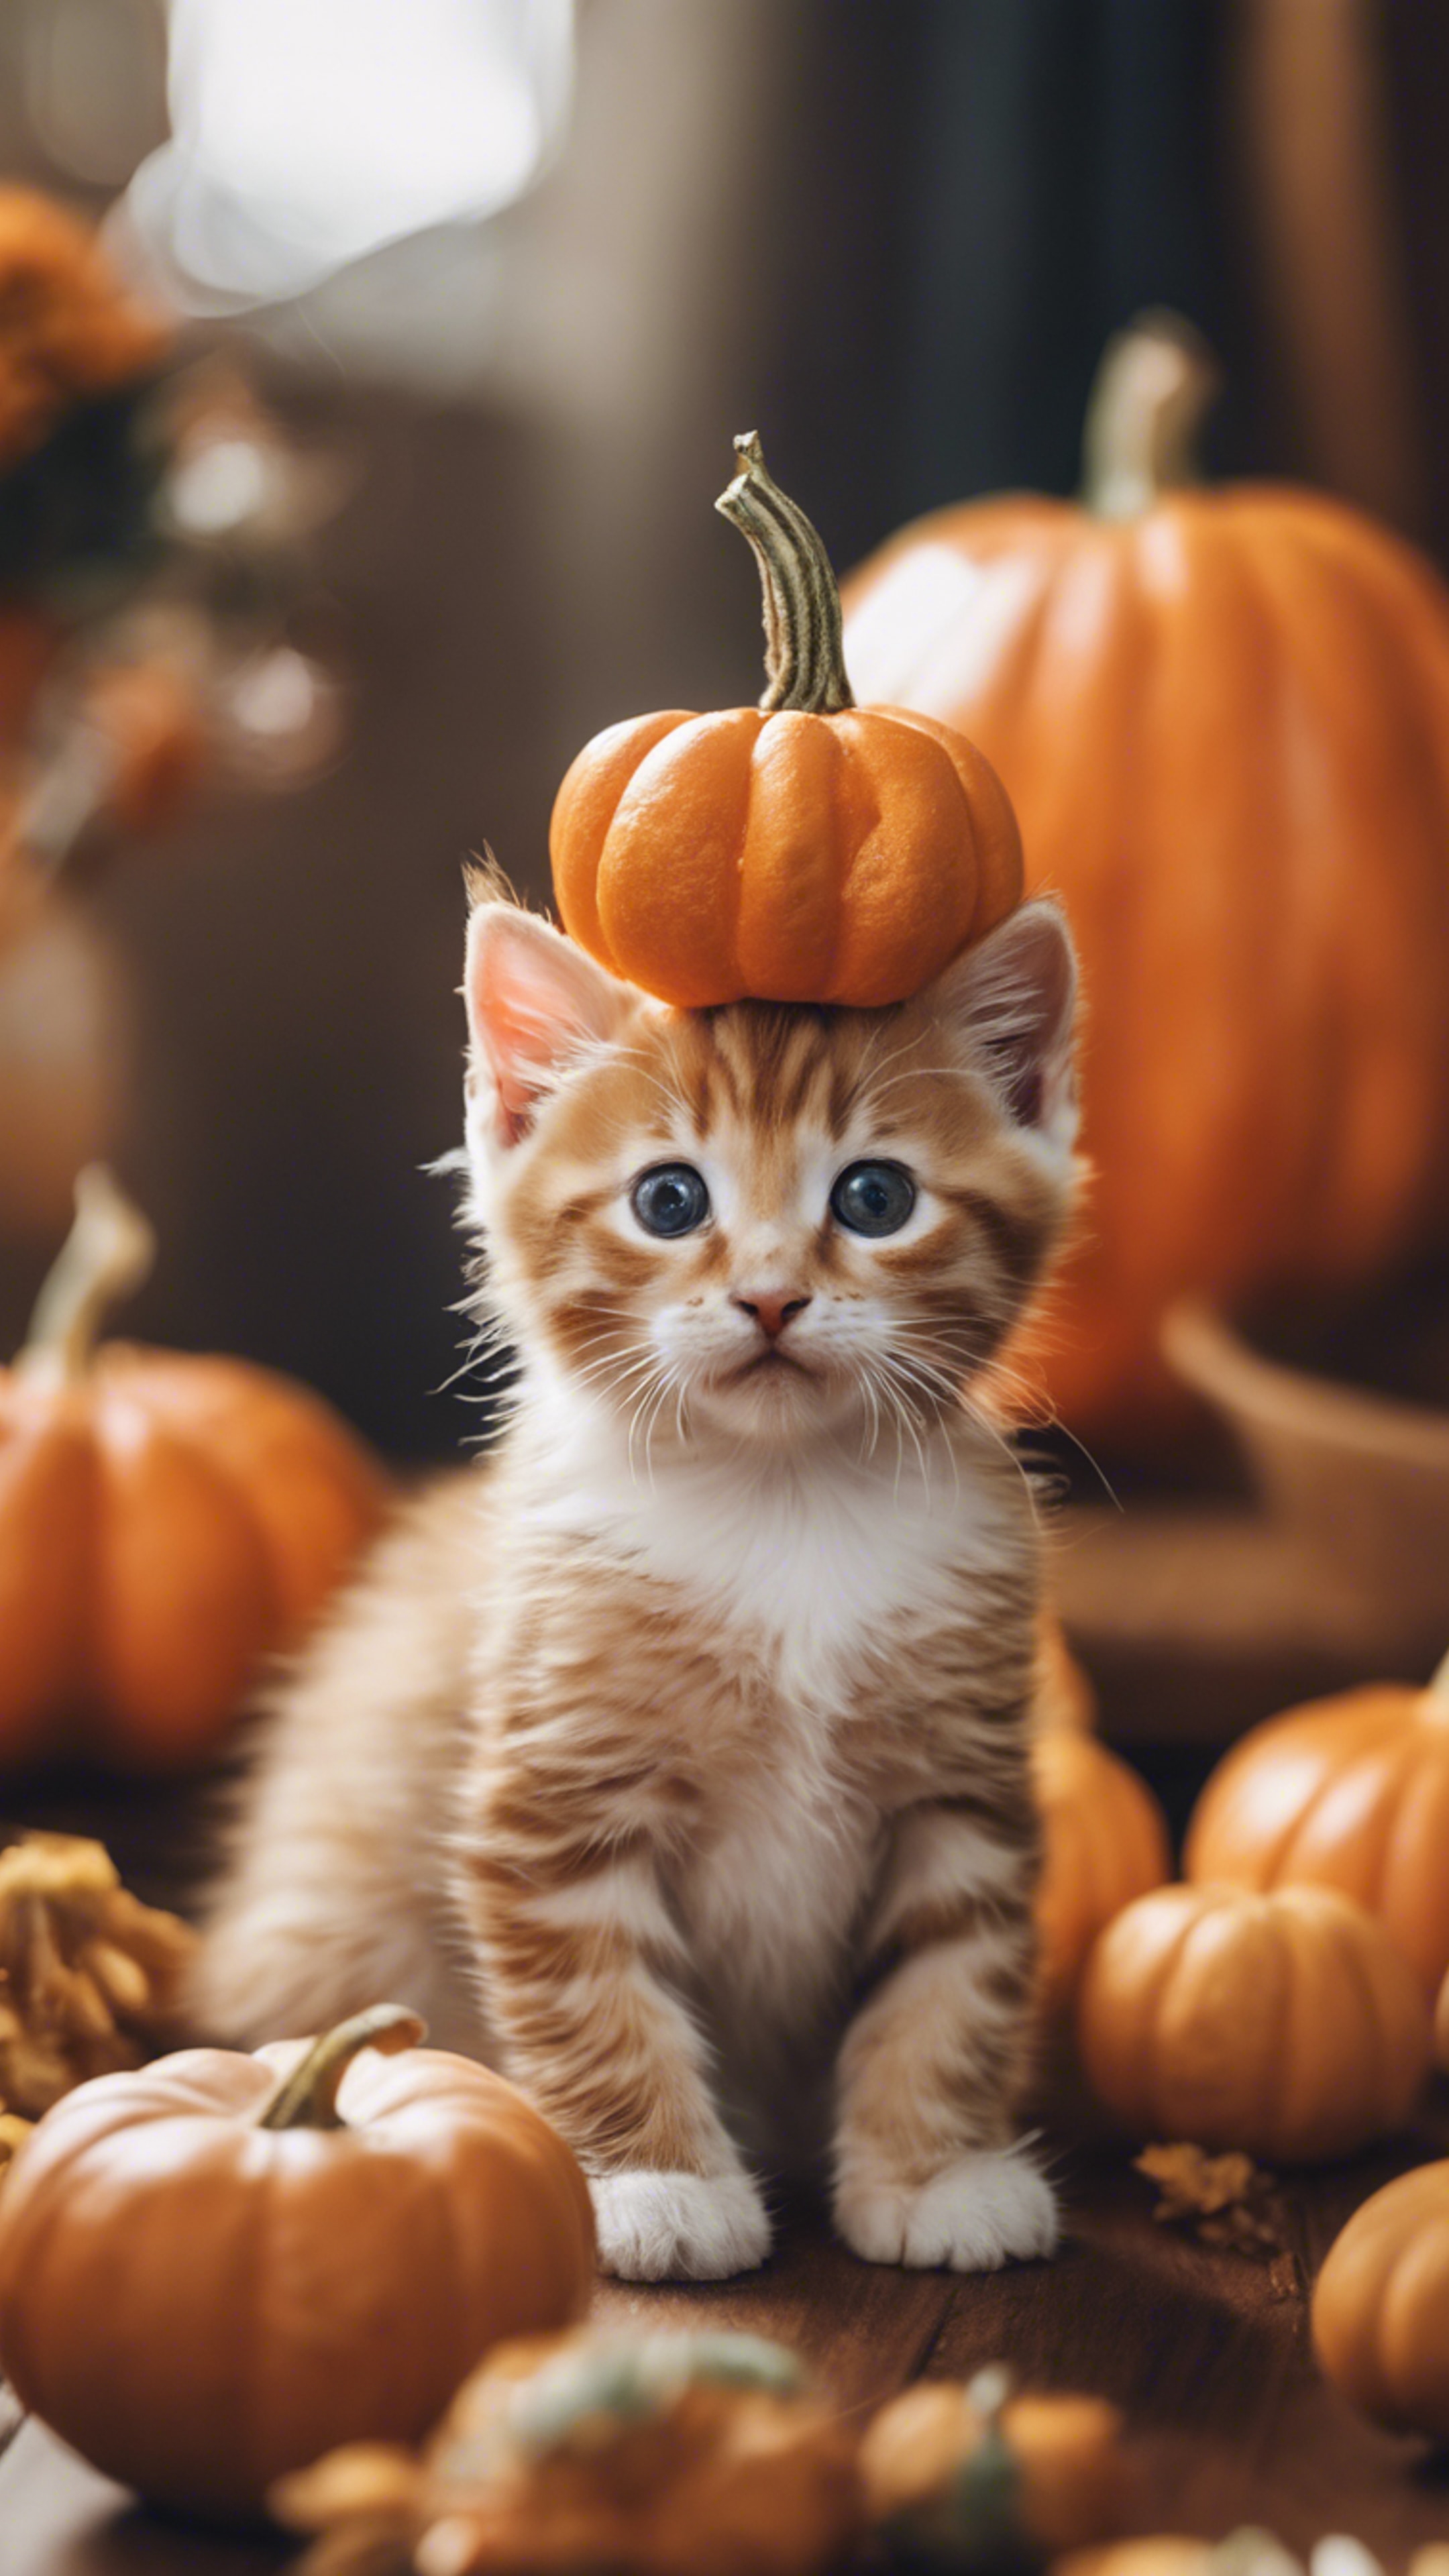 An orange tabby kitten dressed up as a tiny pumpkin for Halloween festivities. Wallpaper[a5205dadd28d41bcbdef]